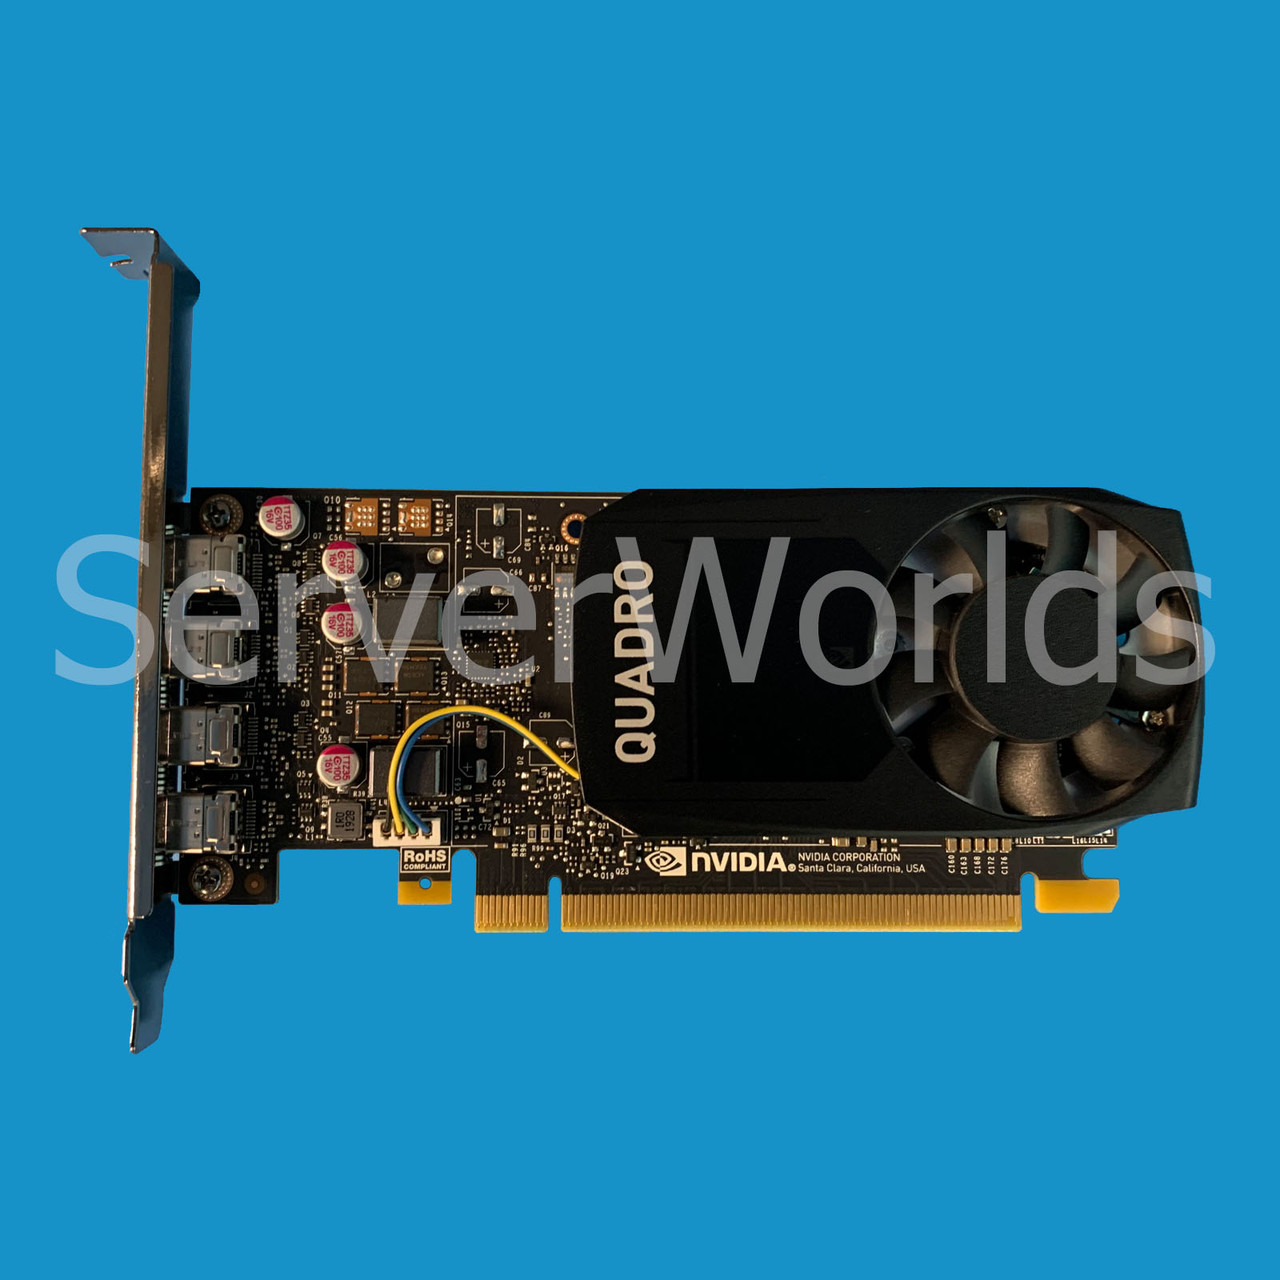 Dell G7T21 NVIDIA Quadro P1000 4GB PCIe Graphics Card